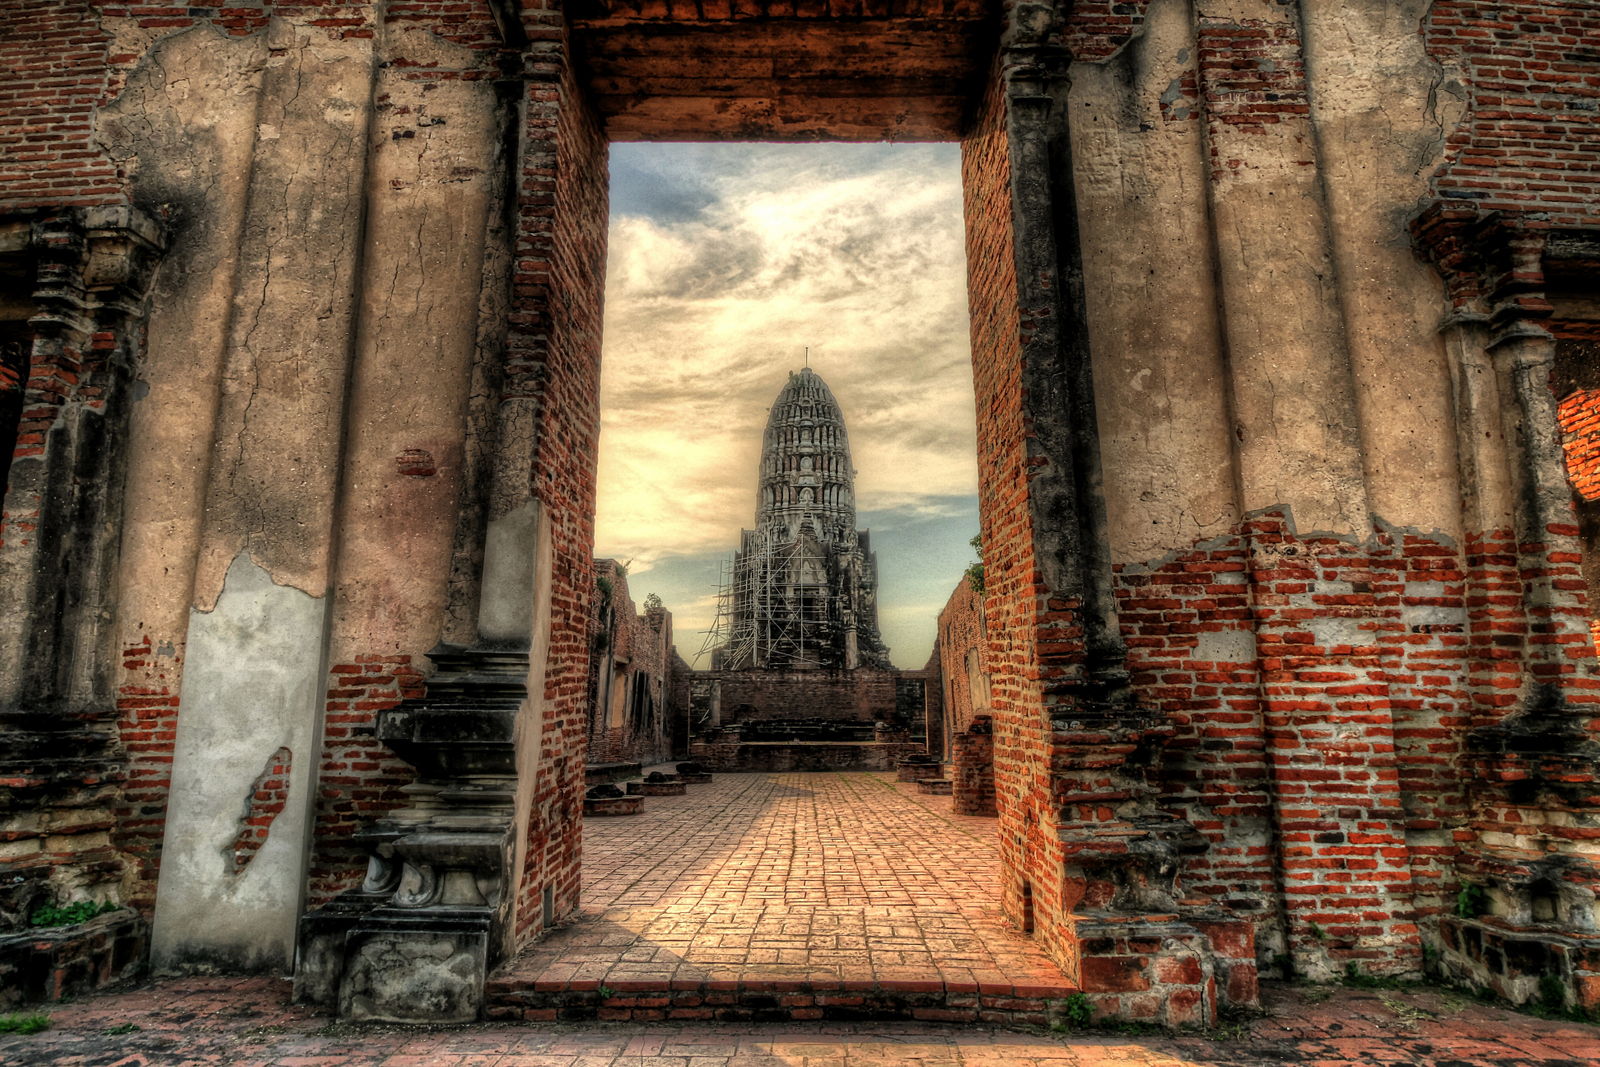 Wat Ratchaburana Prang Ayutthaya Thailand doorway large 2.jpg